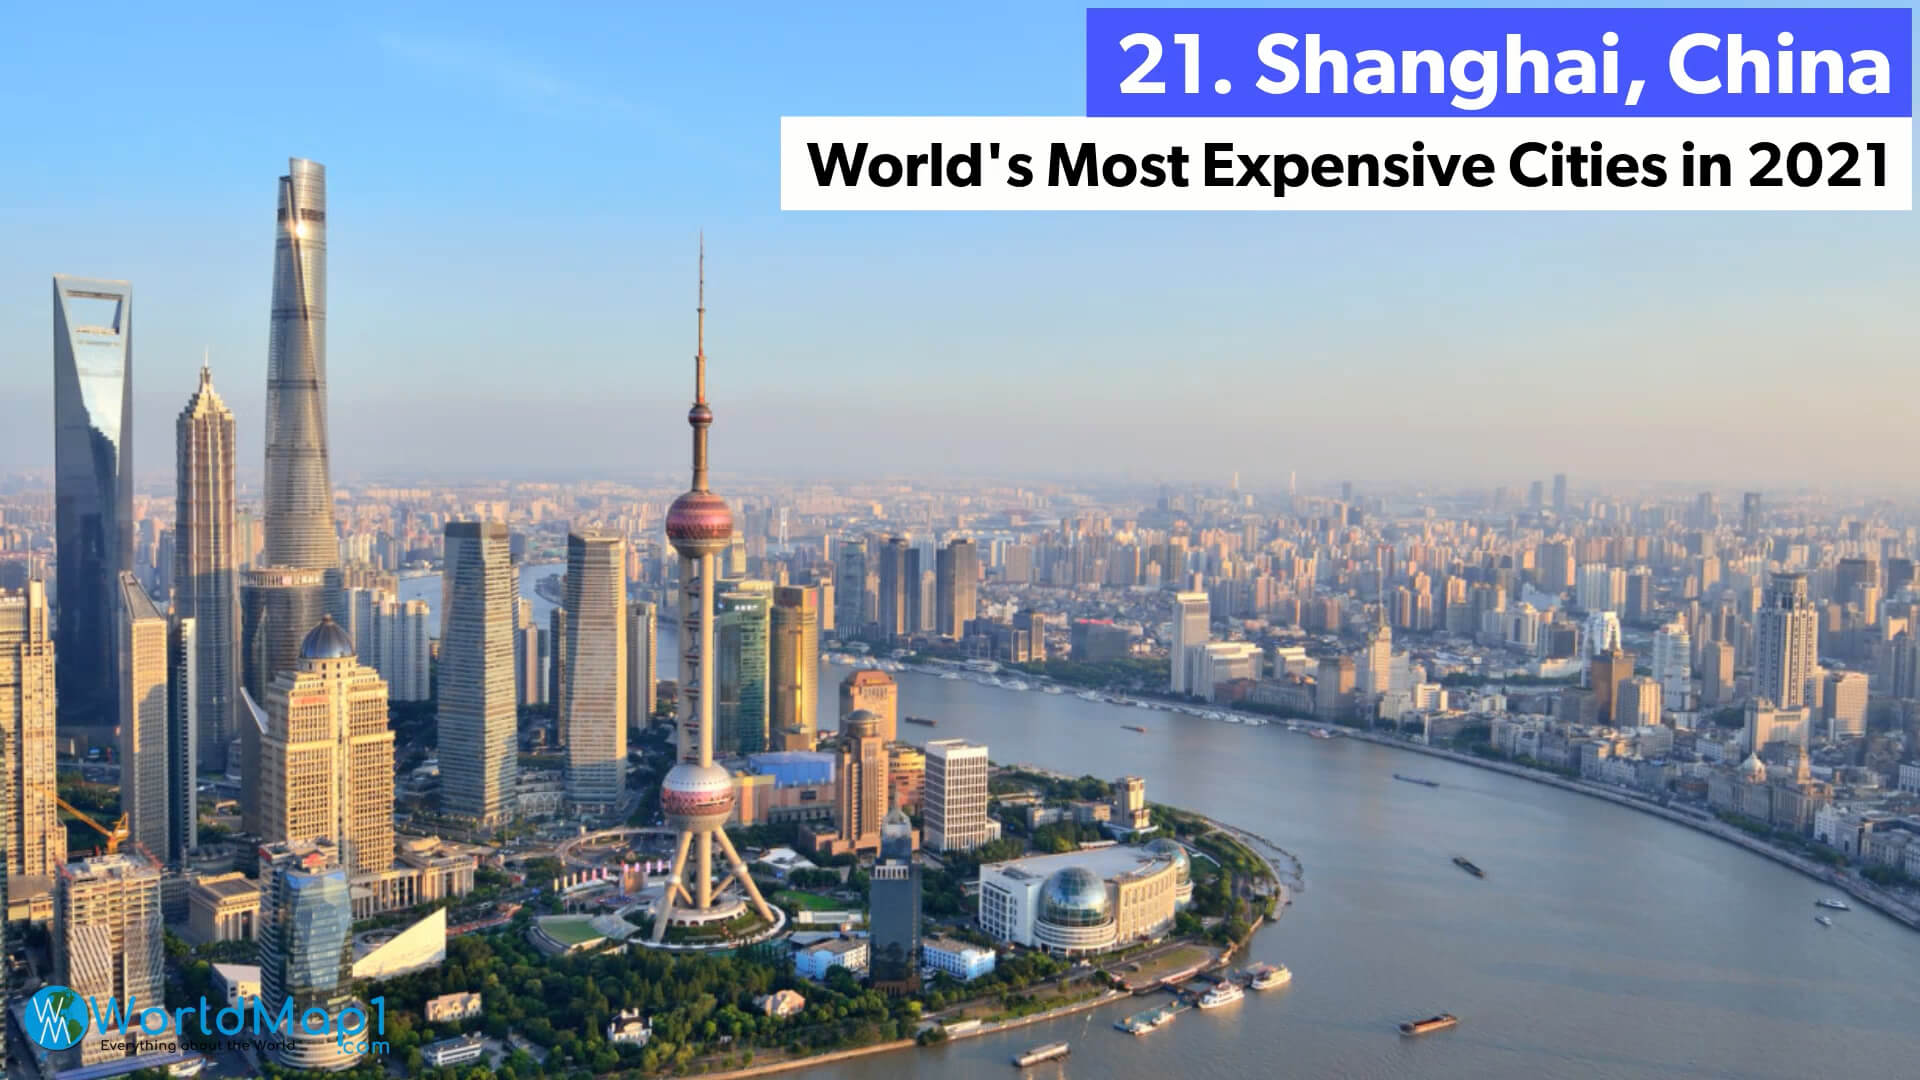 Les villes les plus chères du monde - Shanghai, Chine